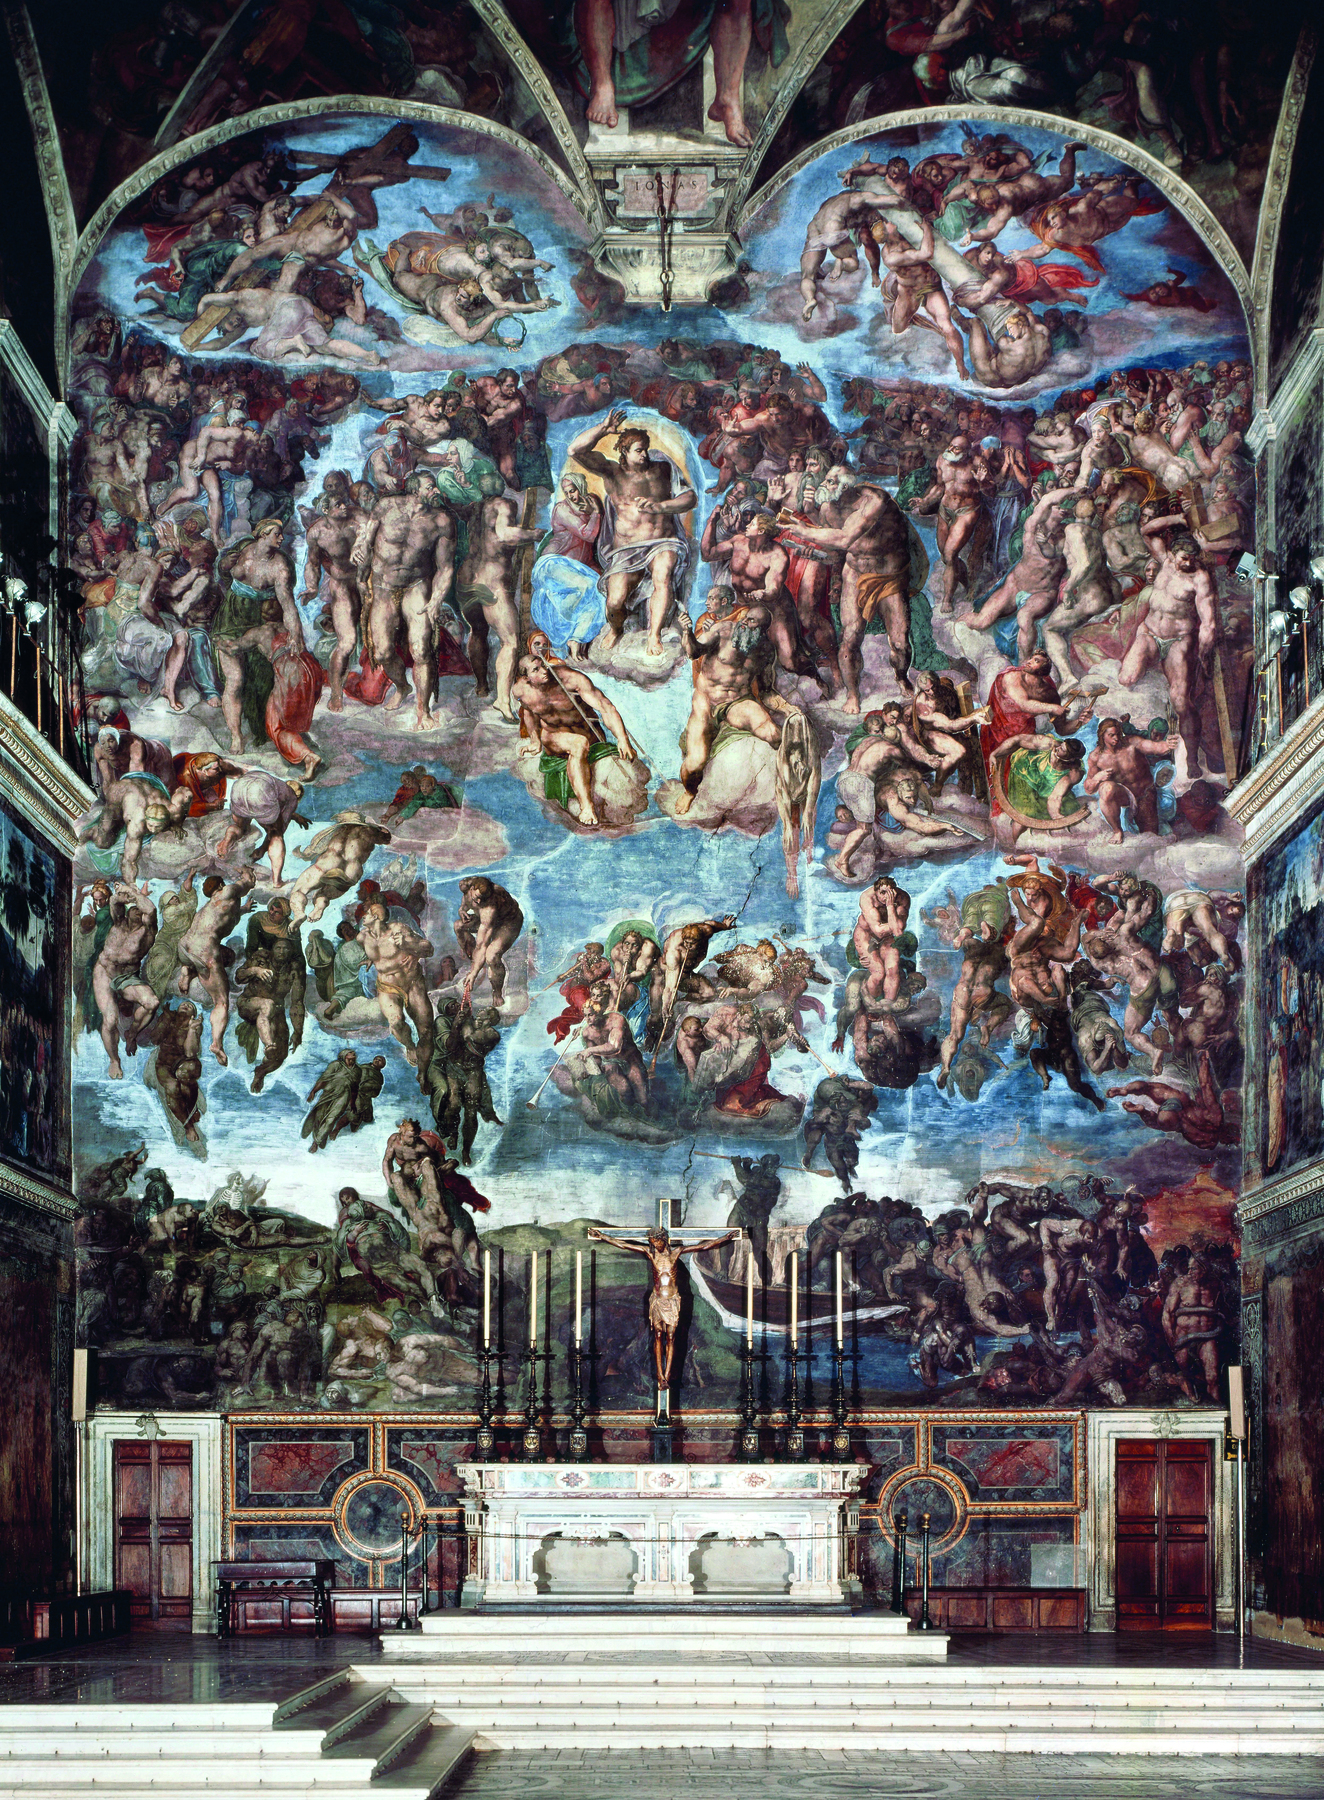 Fotografia. No centro, um altar de pedra clara com degraus à frente. Atrás e no teto uma grande pintura, com fundo azul e nuvens, de grupo de pessoas em situações diversas, representando cenas do Antigo Testamento.